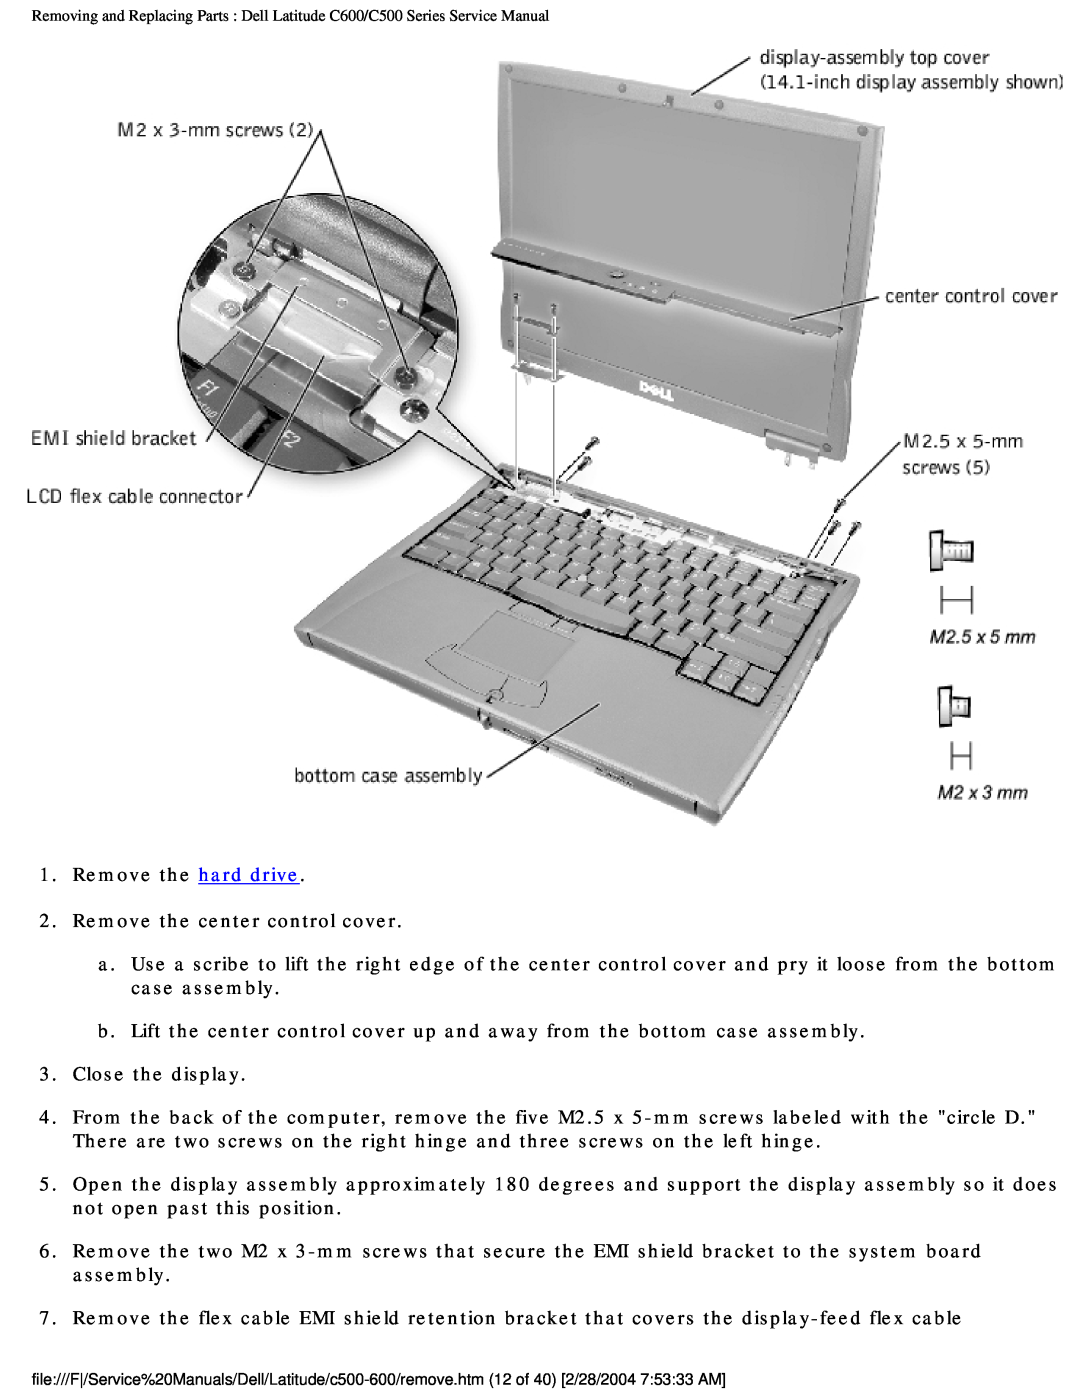 Dell C500 manual Remove the hard drive 2. Remove the center control cover 